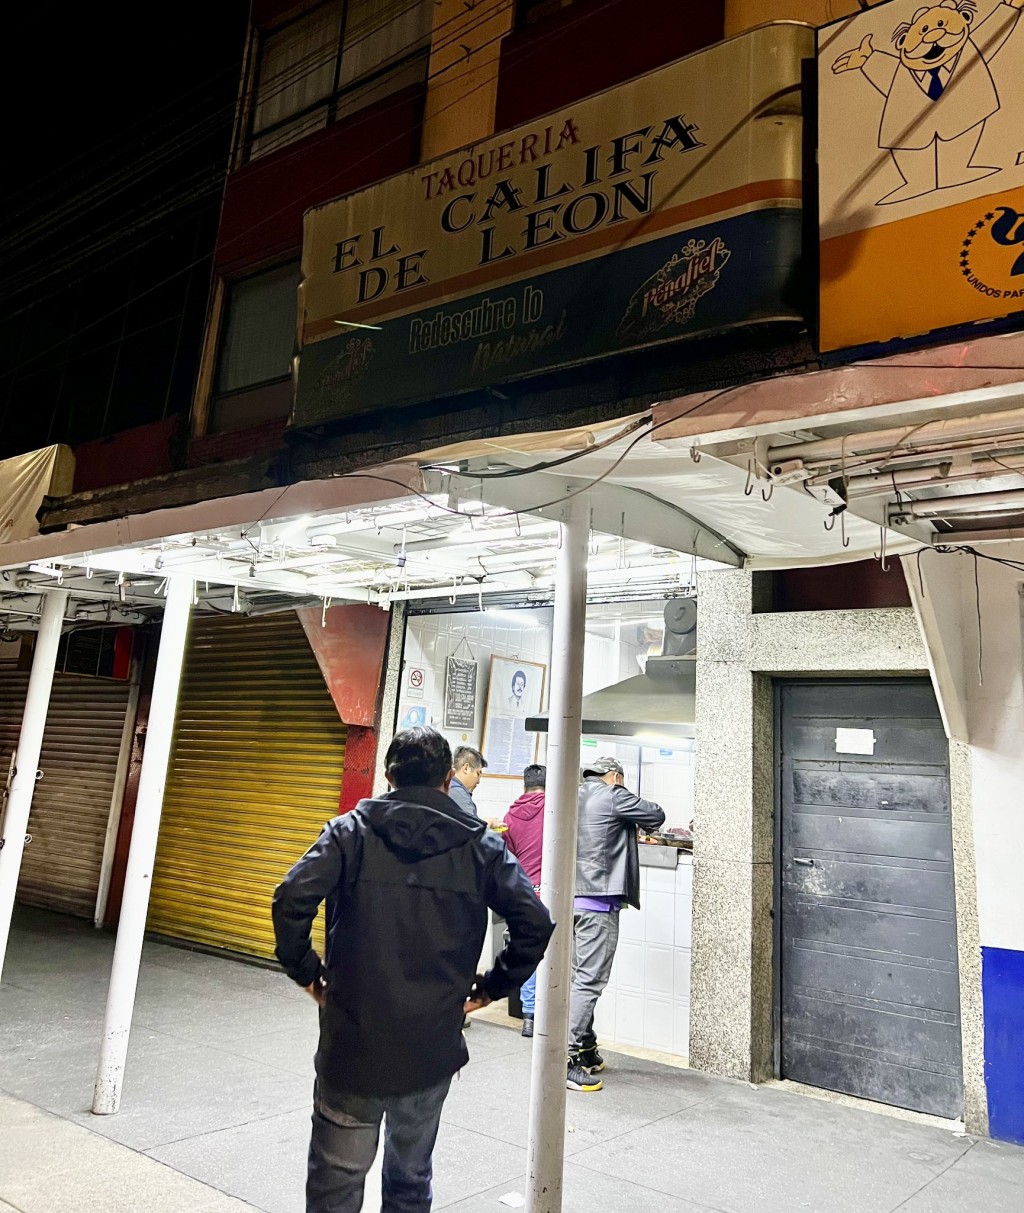 Tacos El Califa de León店舖门面。 X